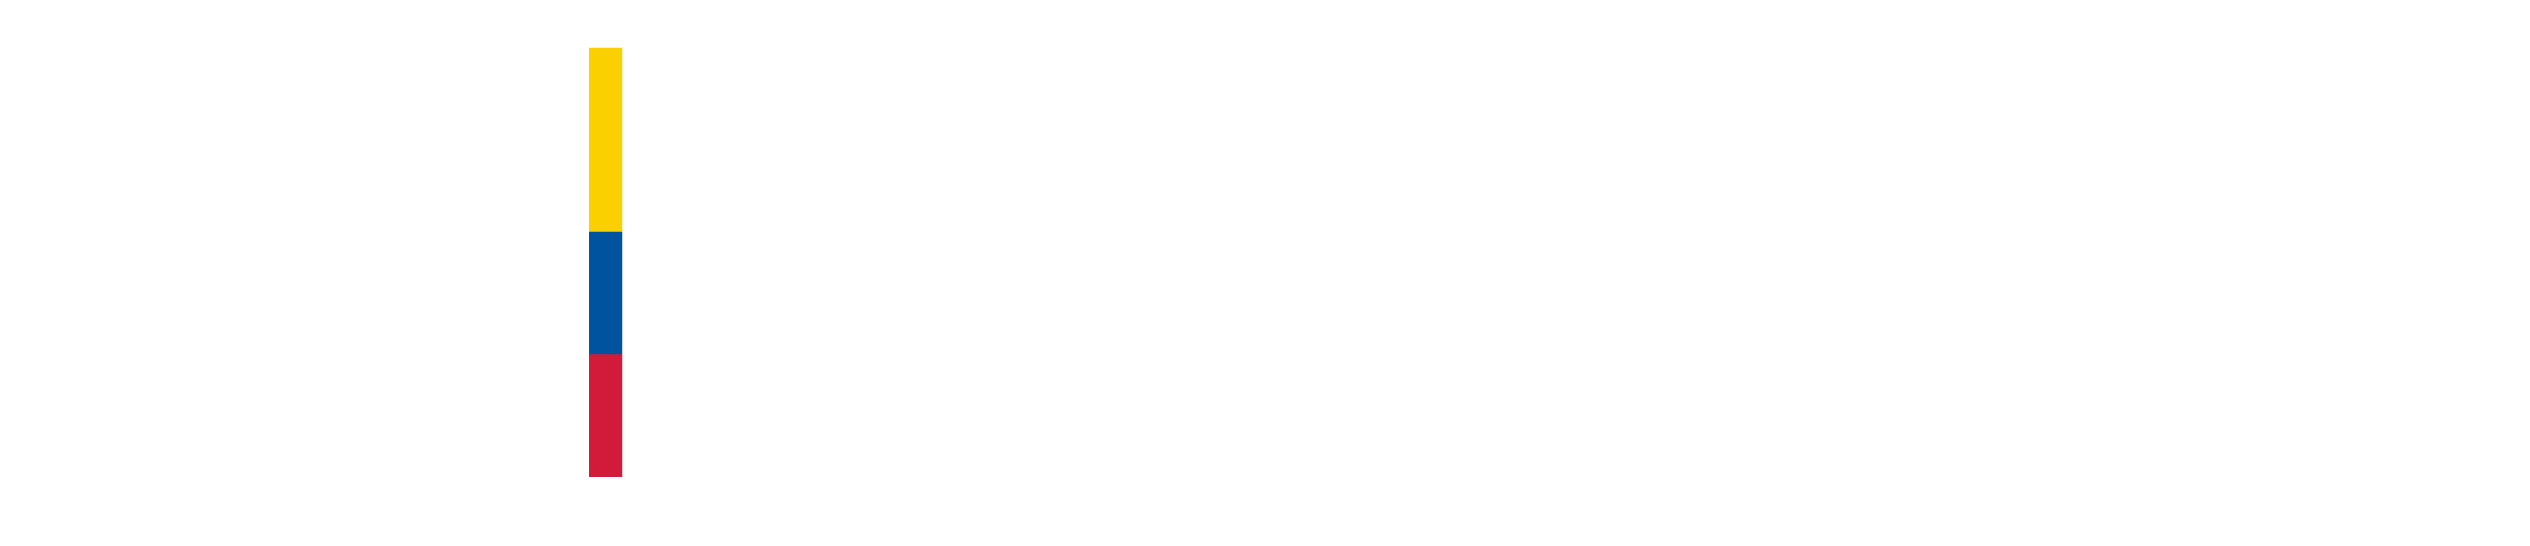 Logo de Gov.co y escudo de colombia